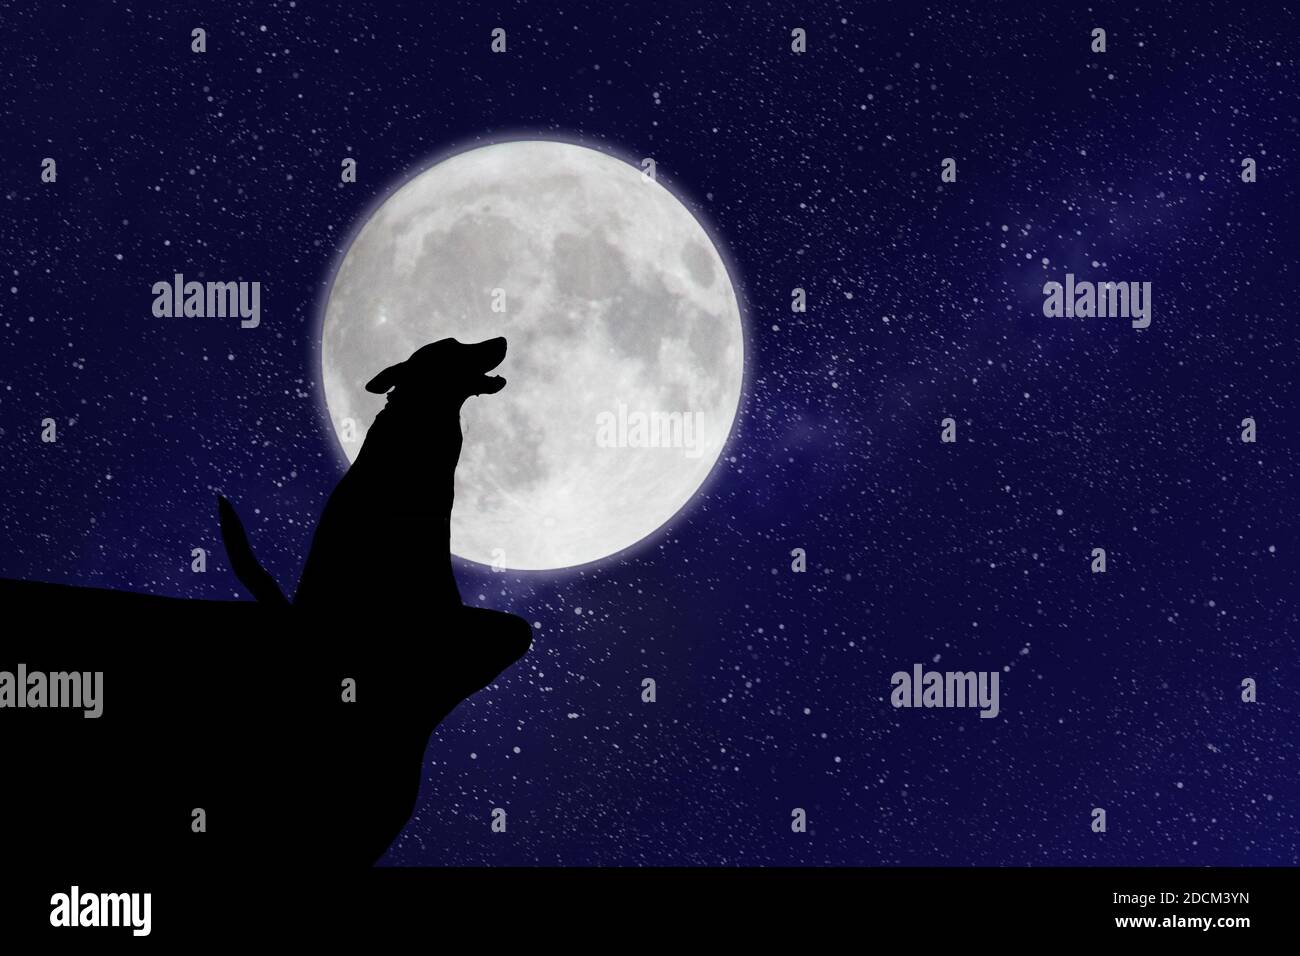 Einsamer Hund oder Wolf heult auf dem Mond Stockfotografie - Alamy